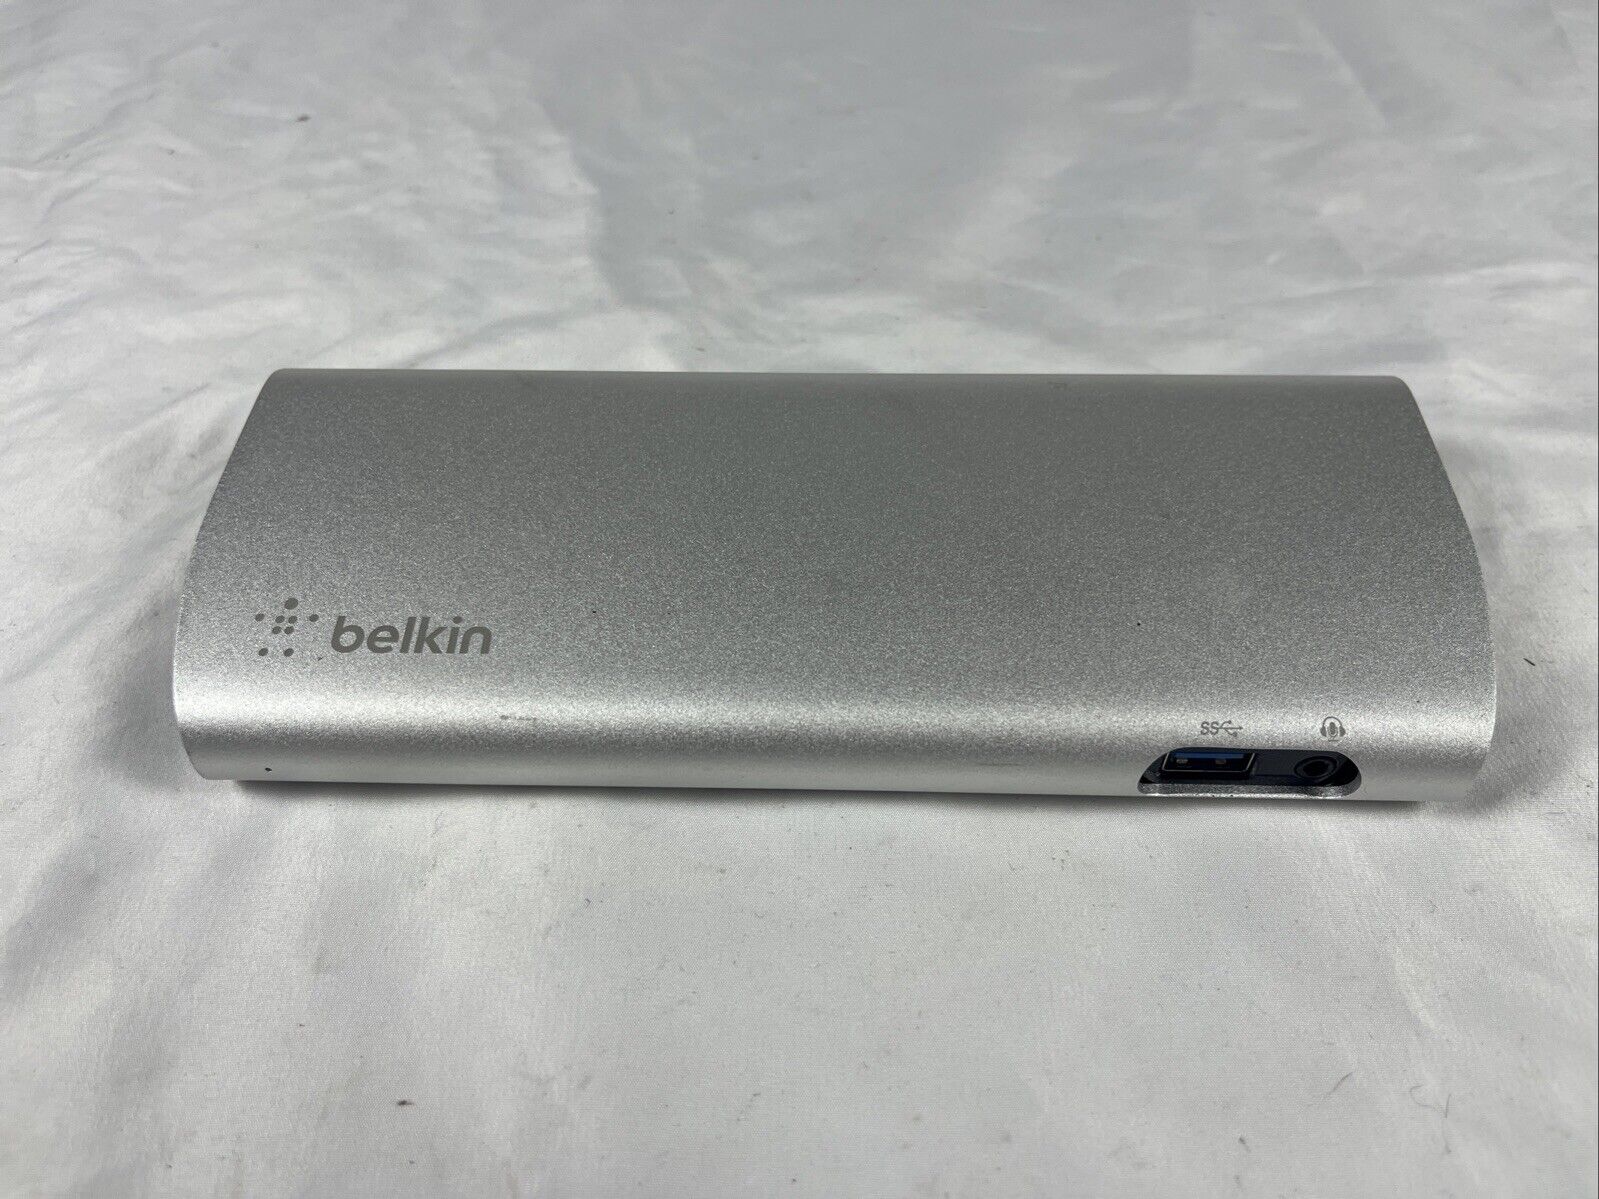 Belkin Thunderbolt Express Dock (only) - F4U055 Tested Thunderbolt 3 MacBook